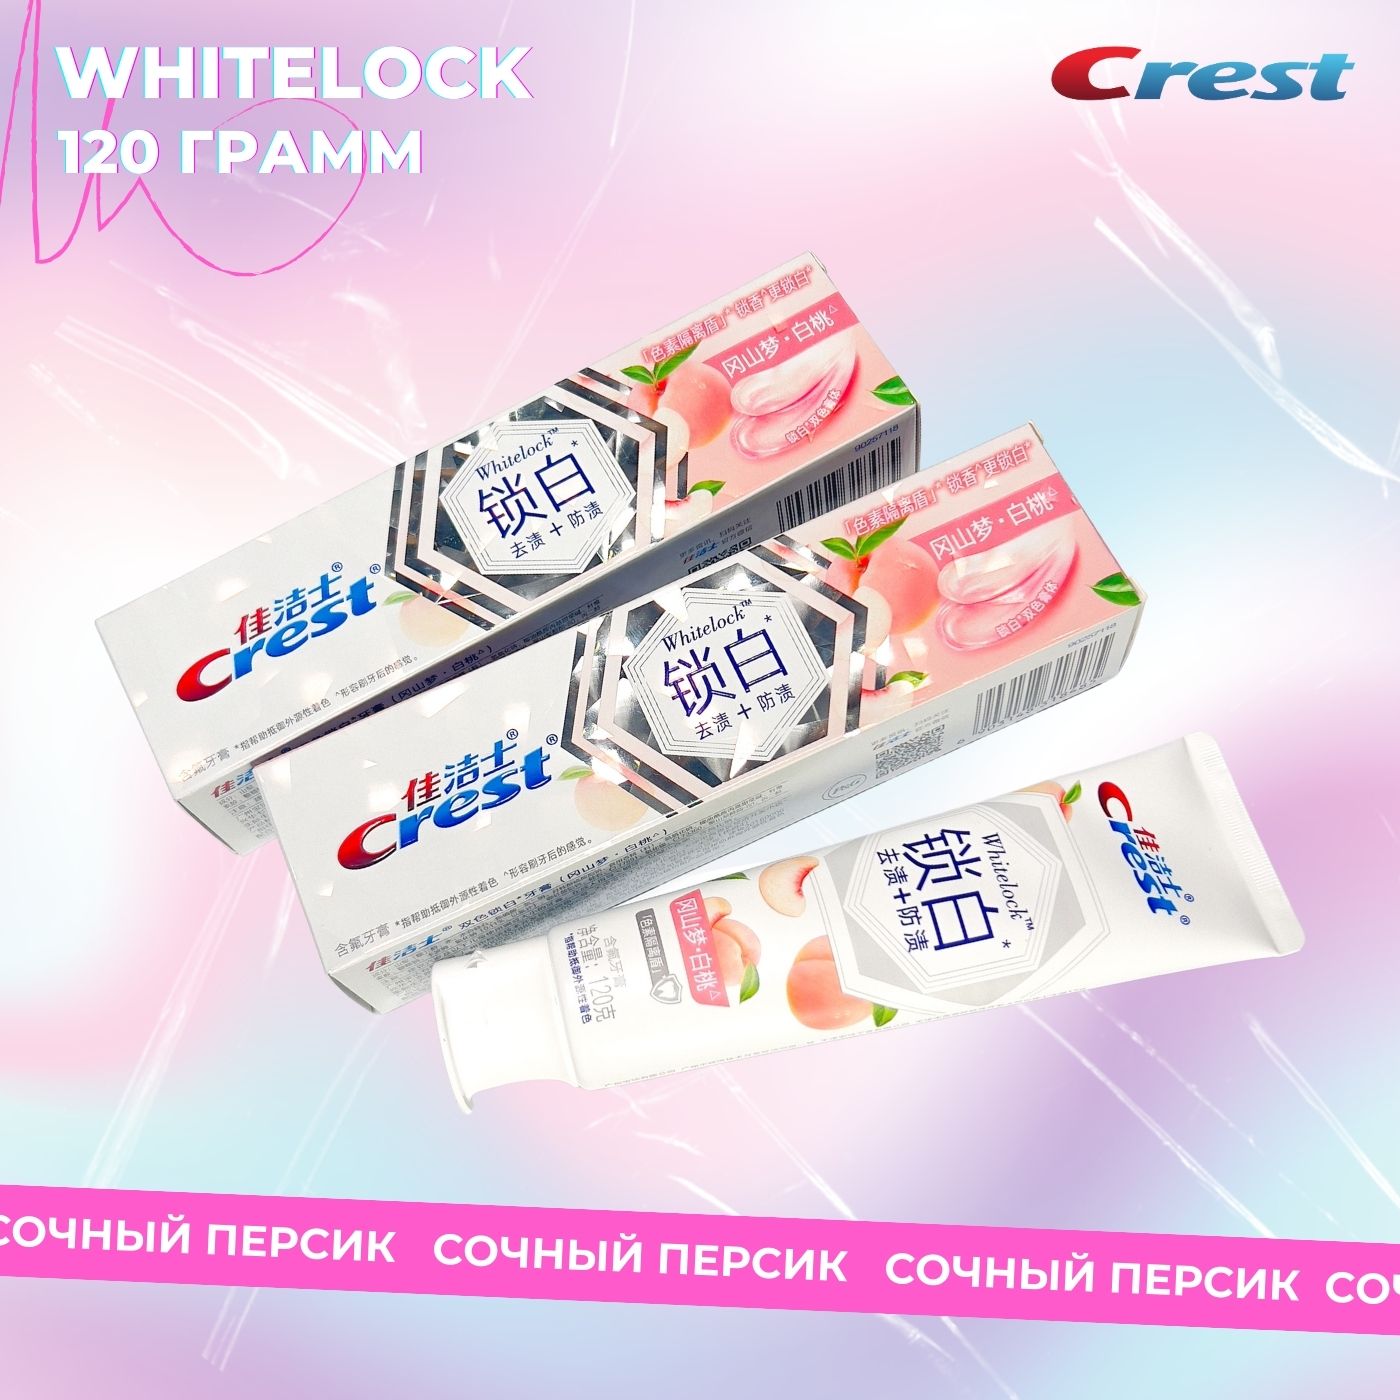 Зубная паста Crest Whitelock профессиональная отбеливающая белый персик 120г зубная паста crest отбеливающая brilliance advanced stain protection 2 шт по 24 г